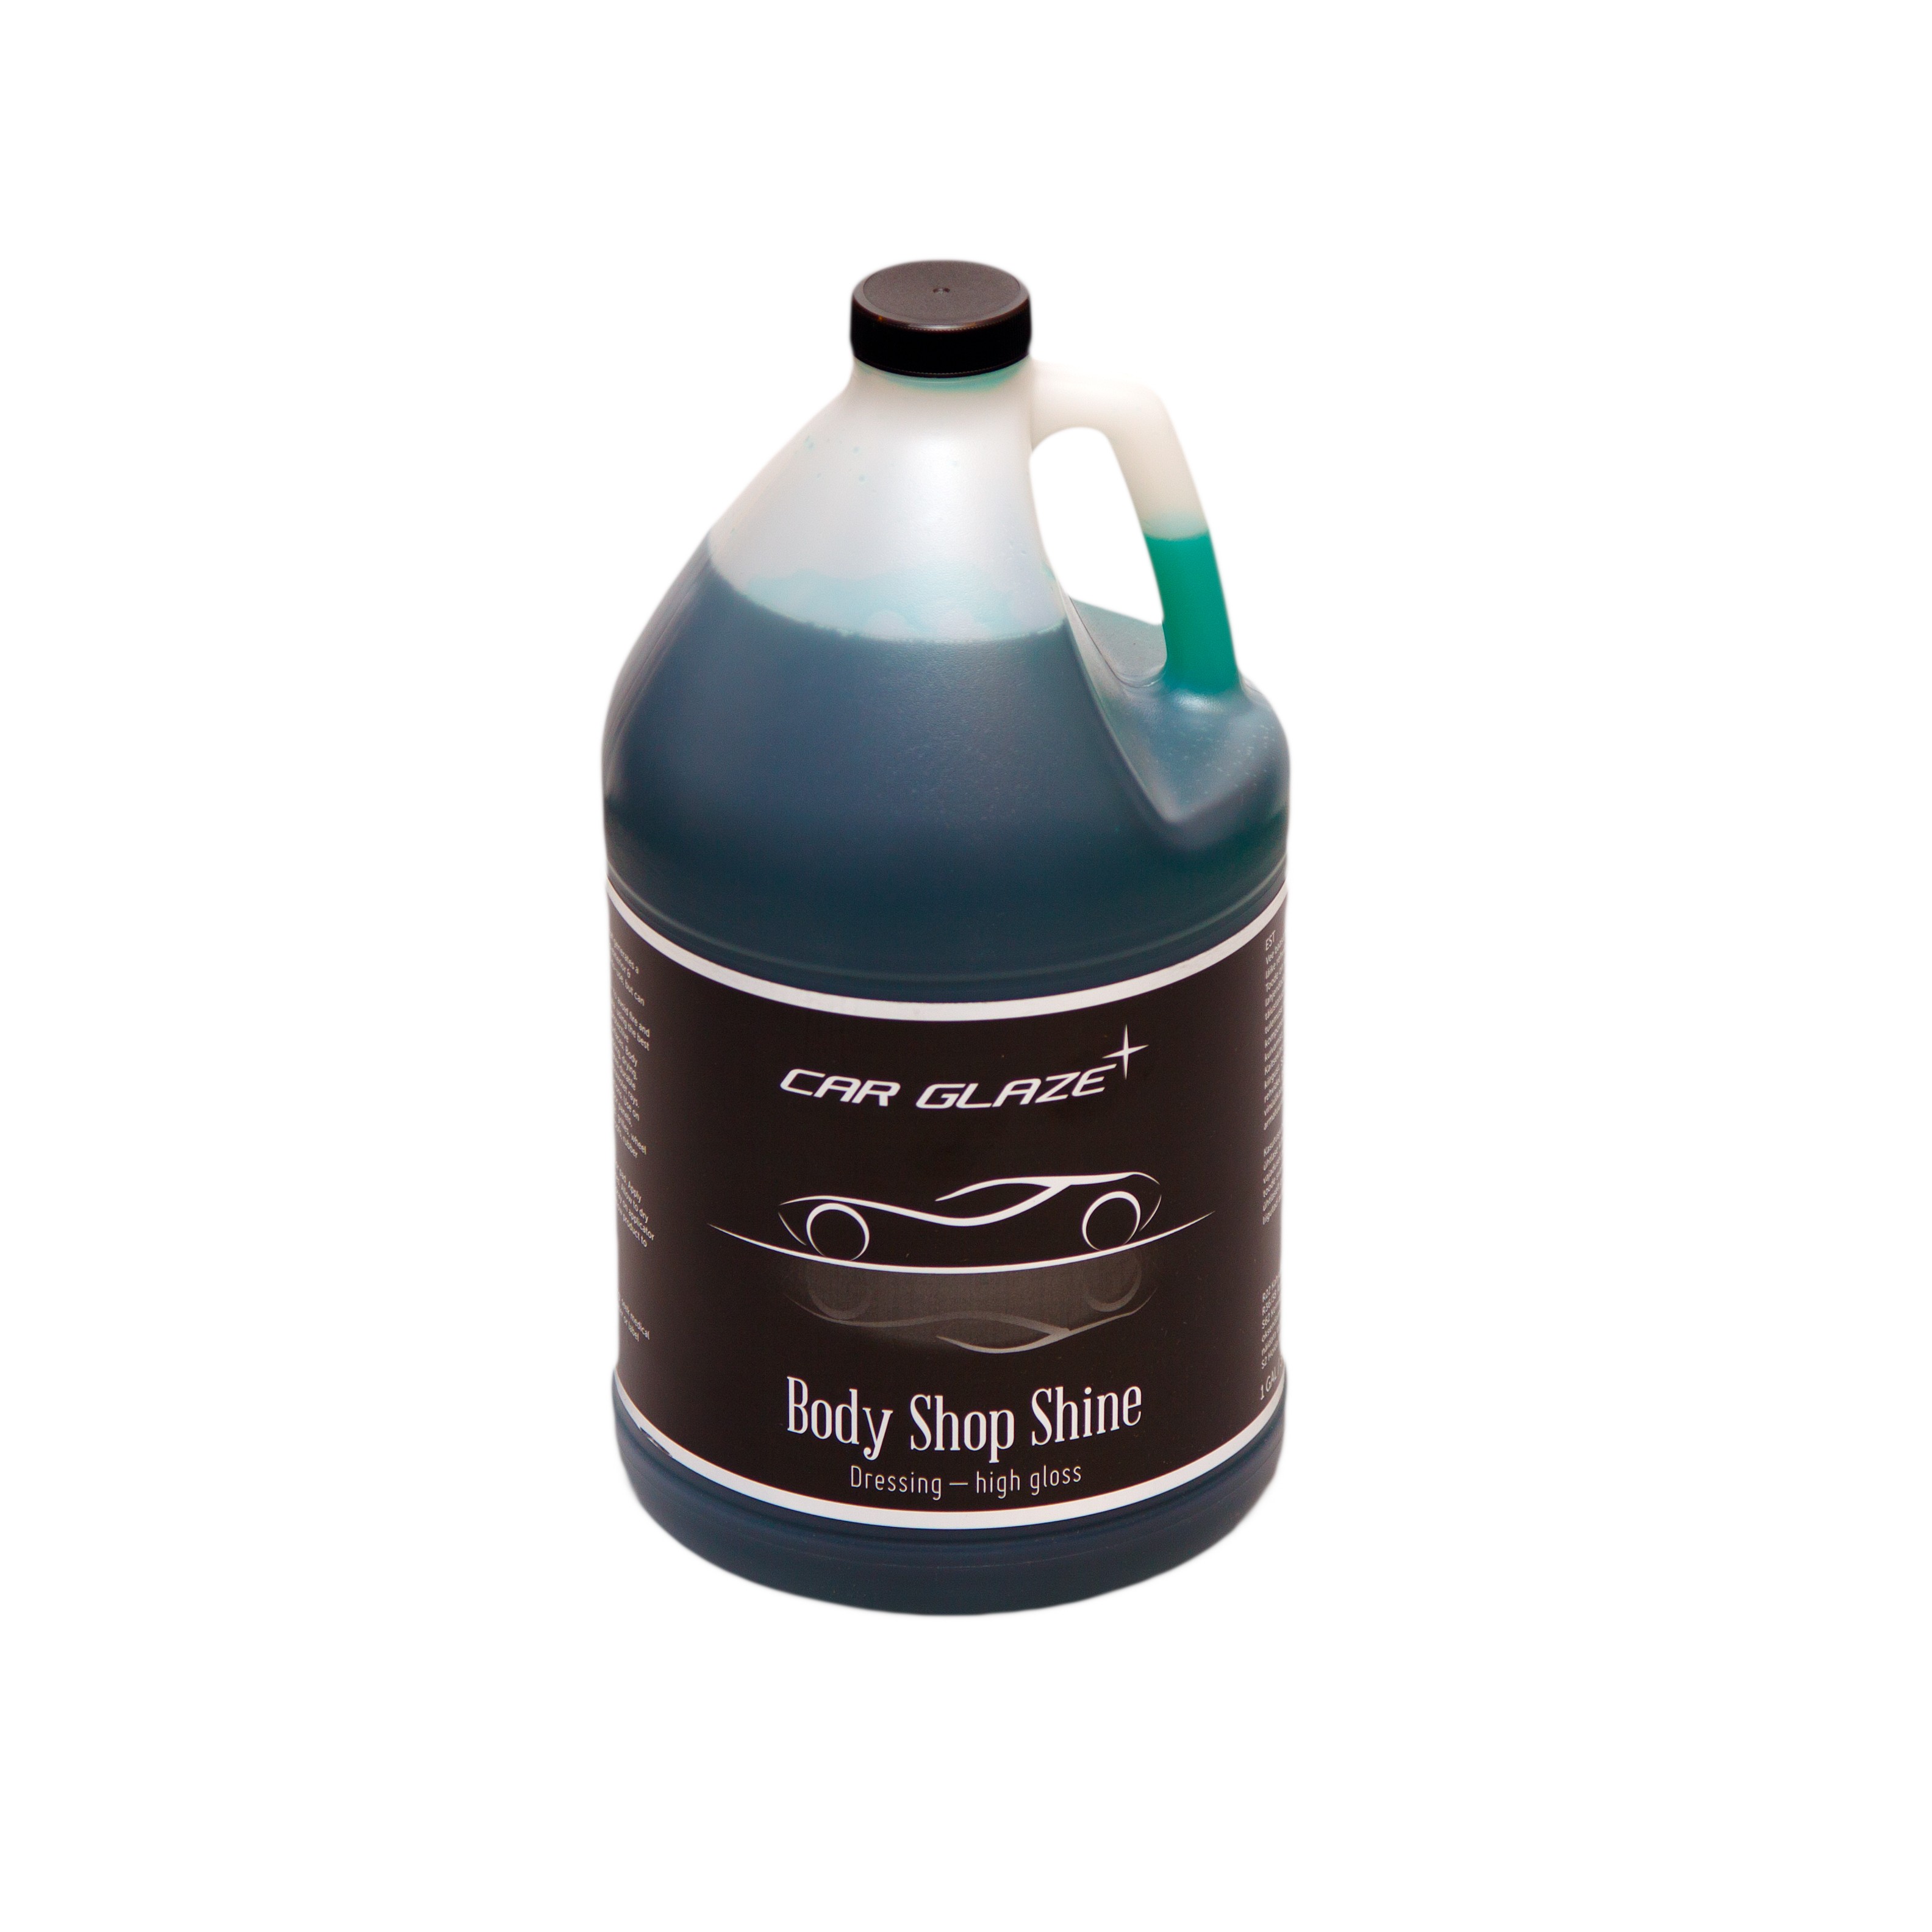 BODY SHOP SHINE - Car Glaze - lahjendatav kummi ja plastiku läigestaja / hooldusvahend - rehviläige - plastikuläige - kummiläige